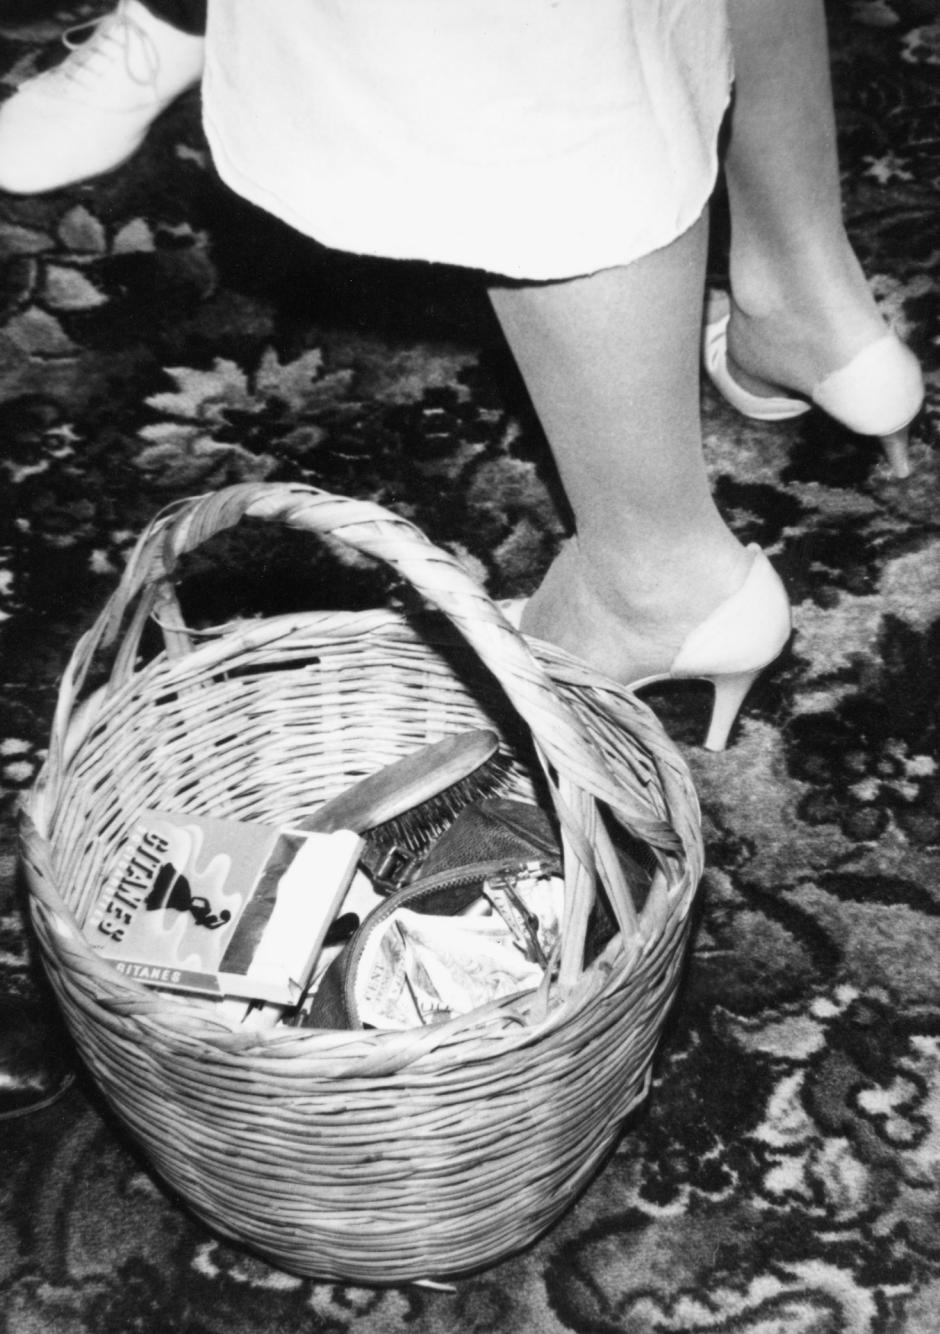 En lugar de un bolso, la actriz francesa Jane Birkin utilizaba una cesta